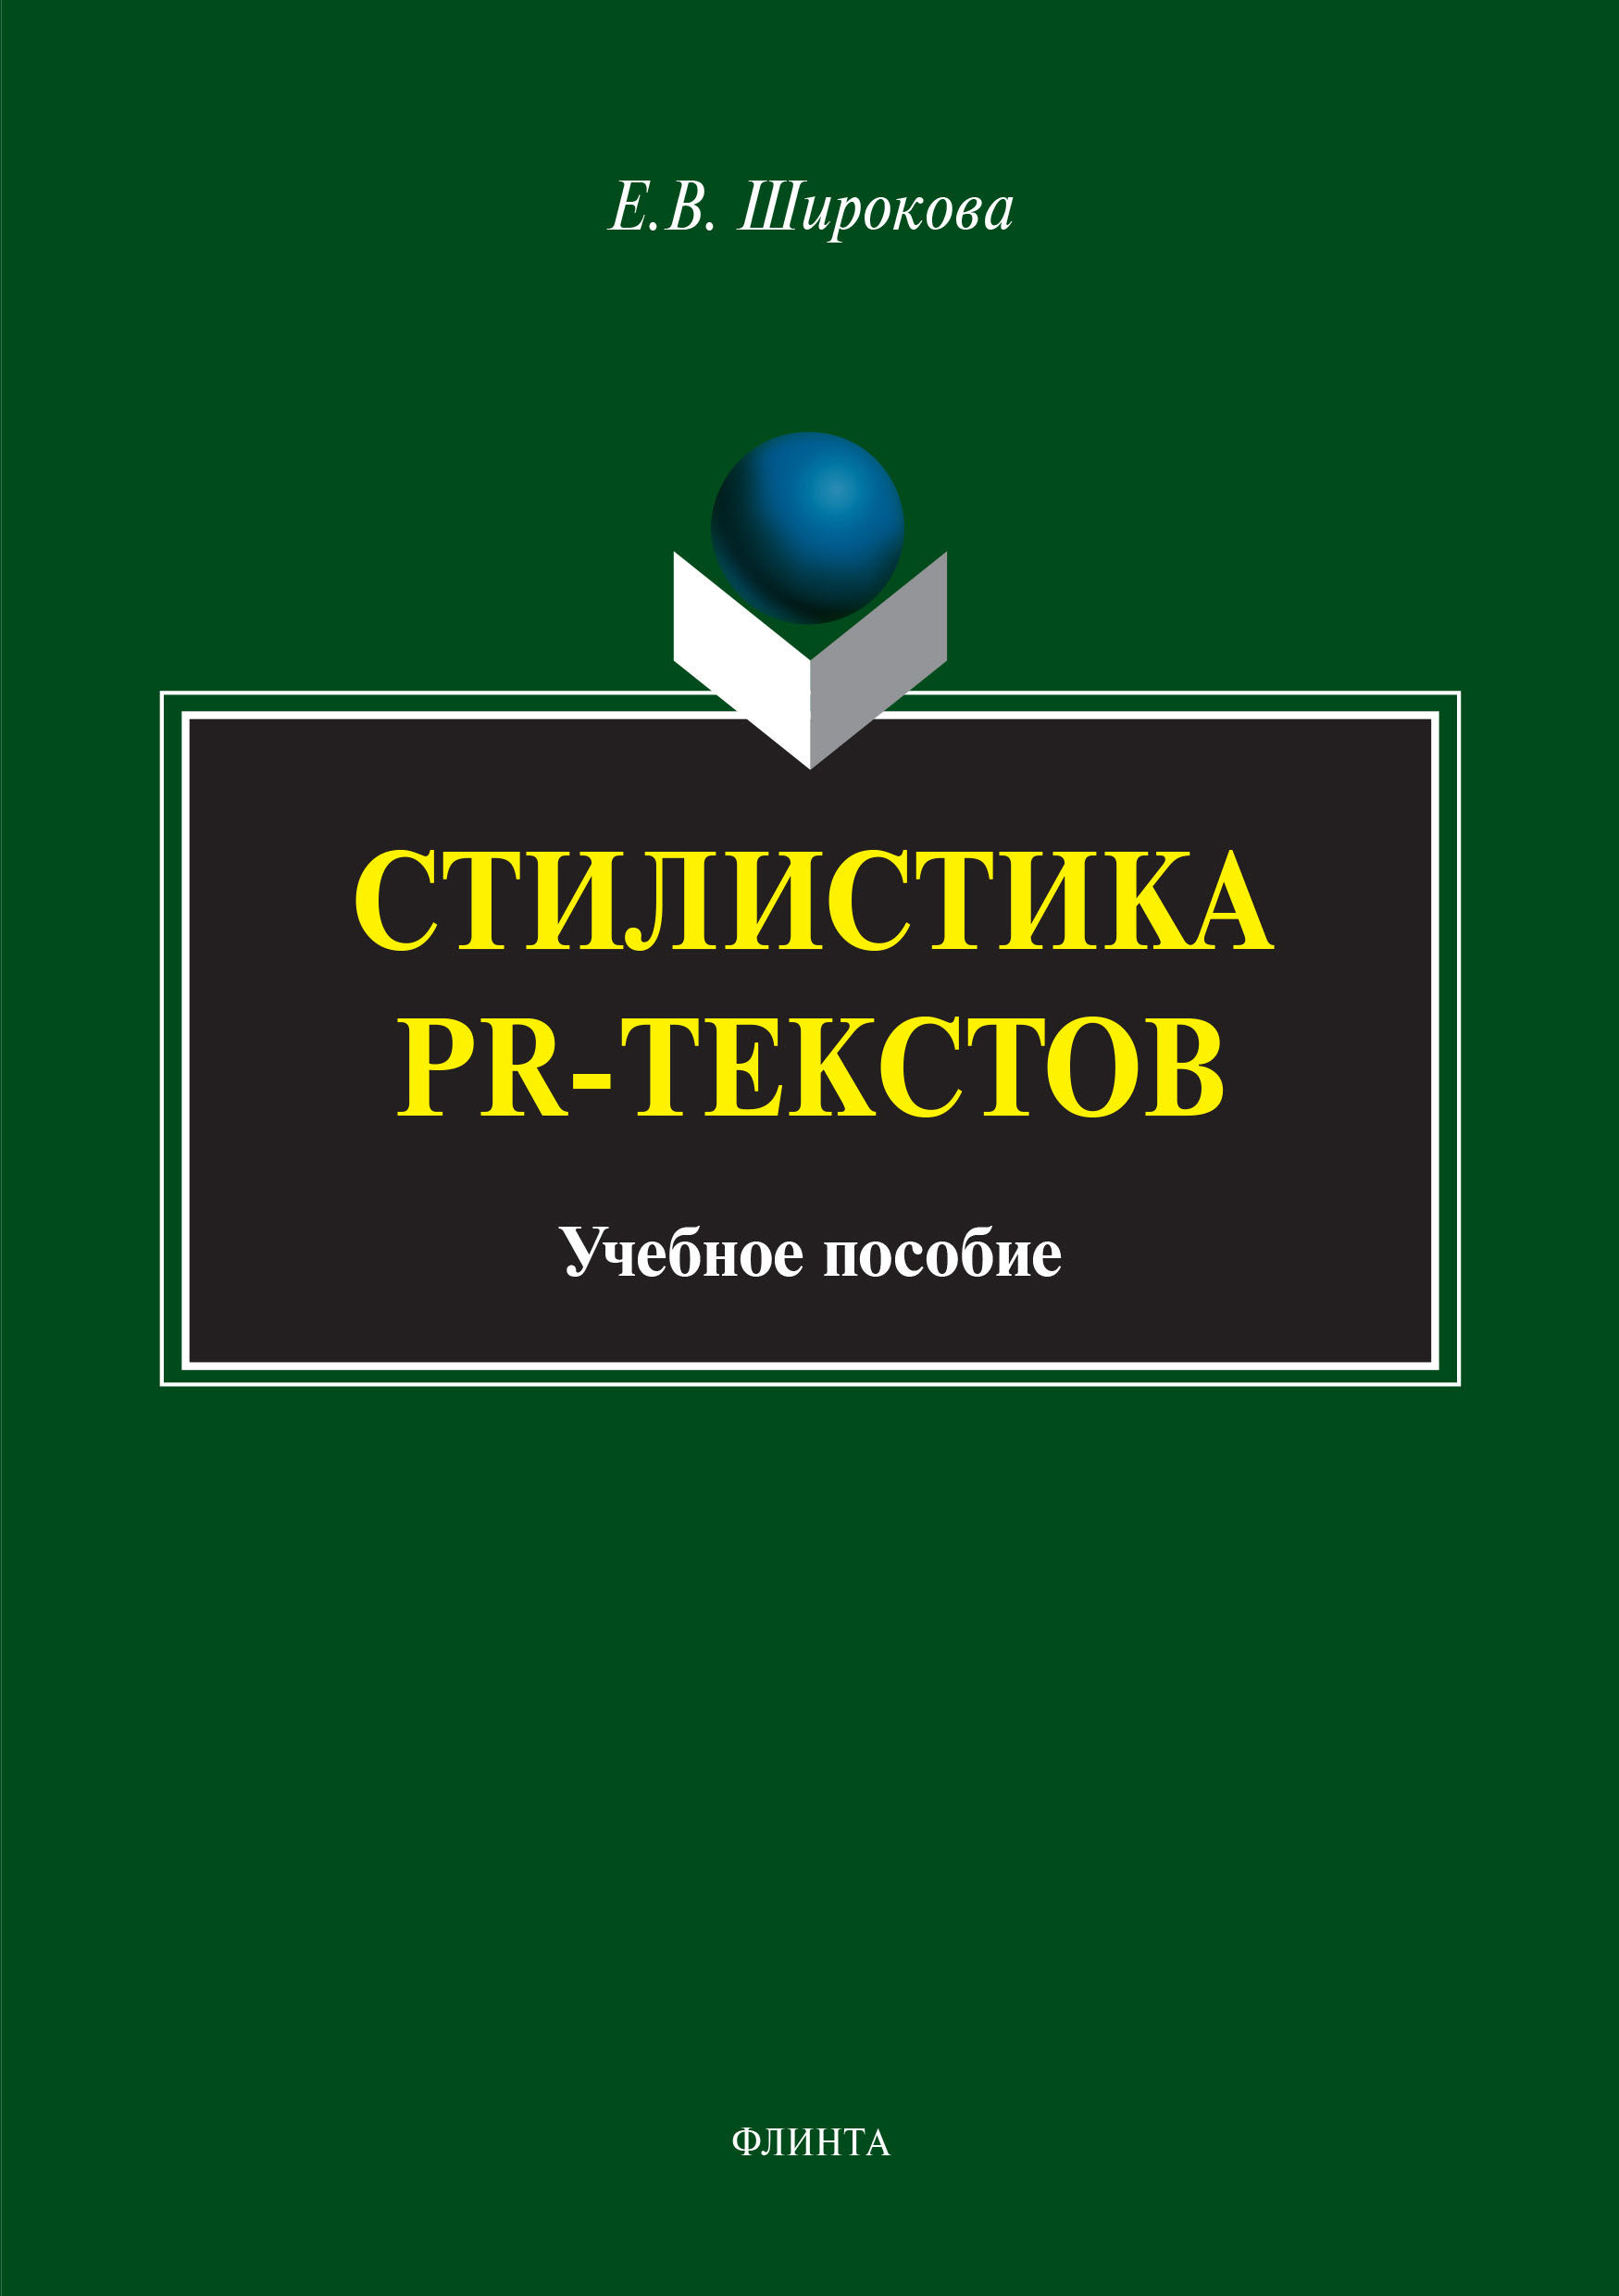 Книга  Стилистика PR-текстов созданная Е. В. Широкова может относится к жанру реклама, русский язык, учебники и пособия для вузов, языкознание. Стоимость электронной книги Стилистика PR-текстов с идентификатором 50239975 составляет 250.00 руб.